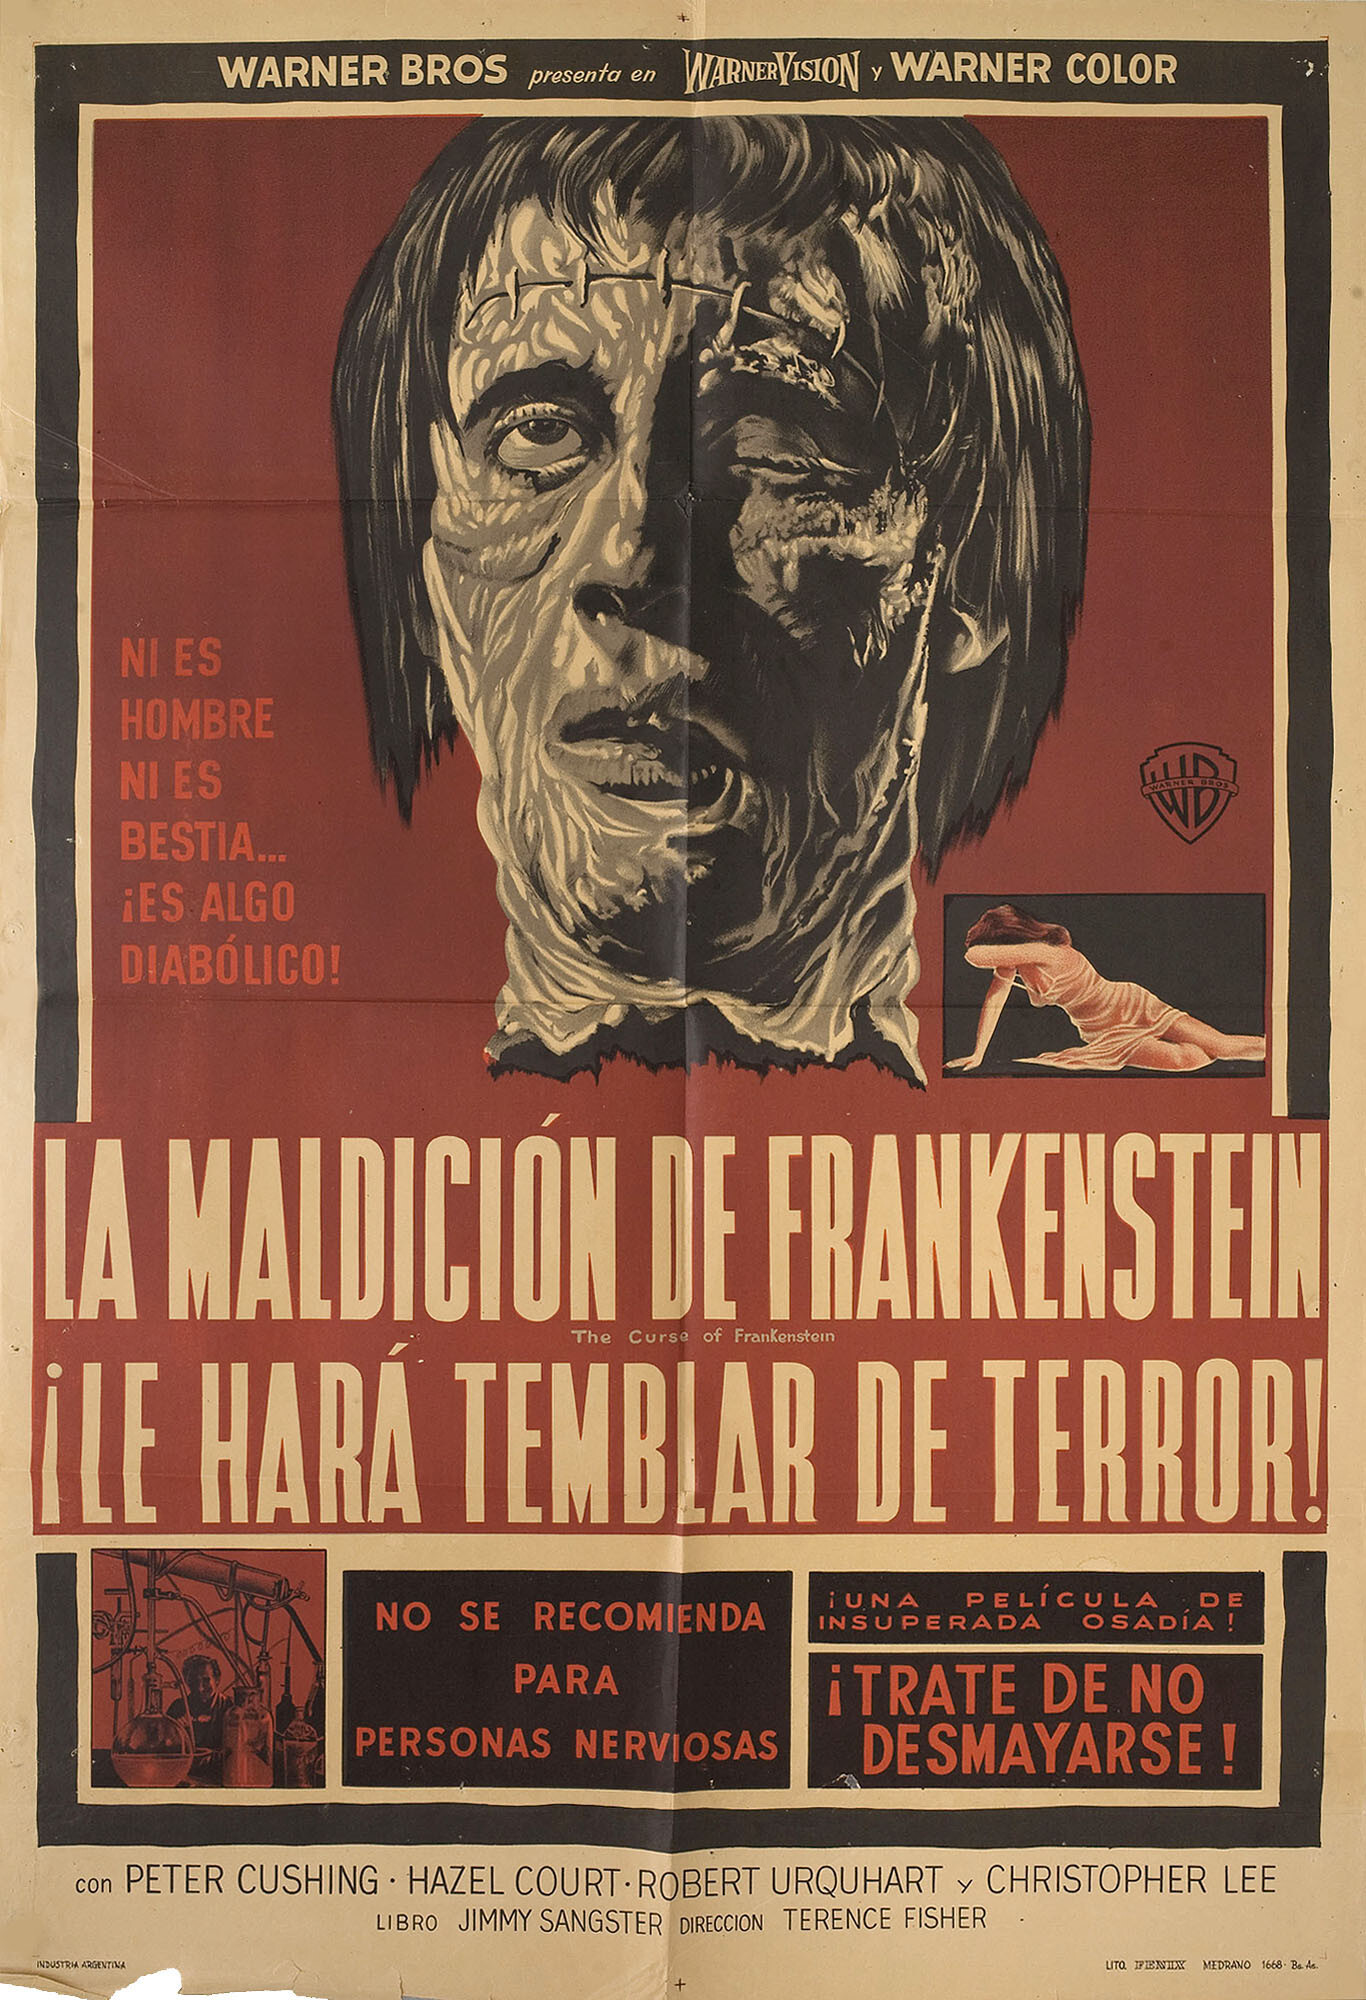 Проклятие Франкенштейна (The Curse of Frankenstein, 1957), режиссёр Теренс Фишер, аргентинский постер к фильму, автор Марио Пиовано (ужасы, 1957 год)